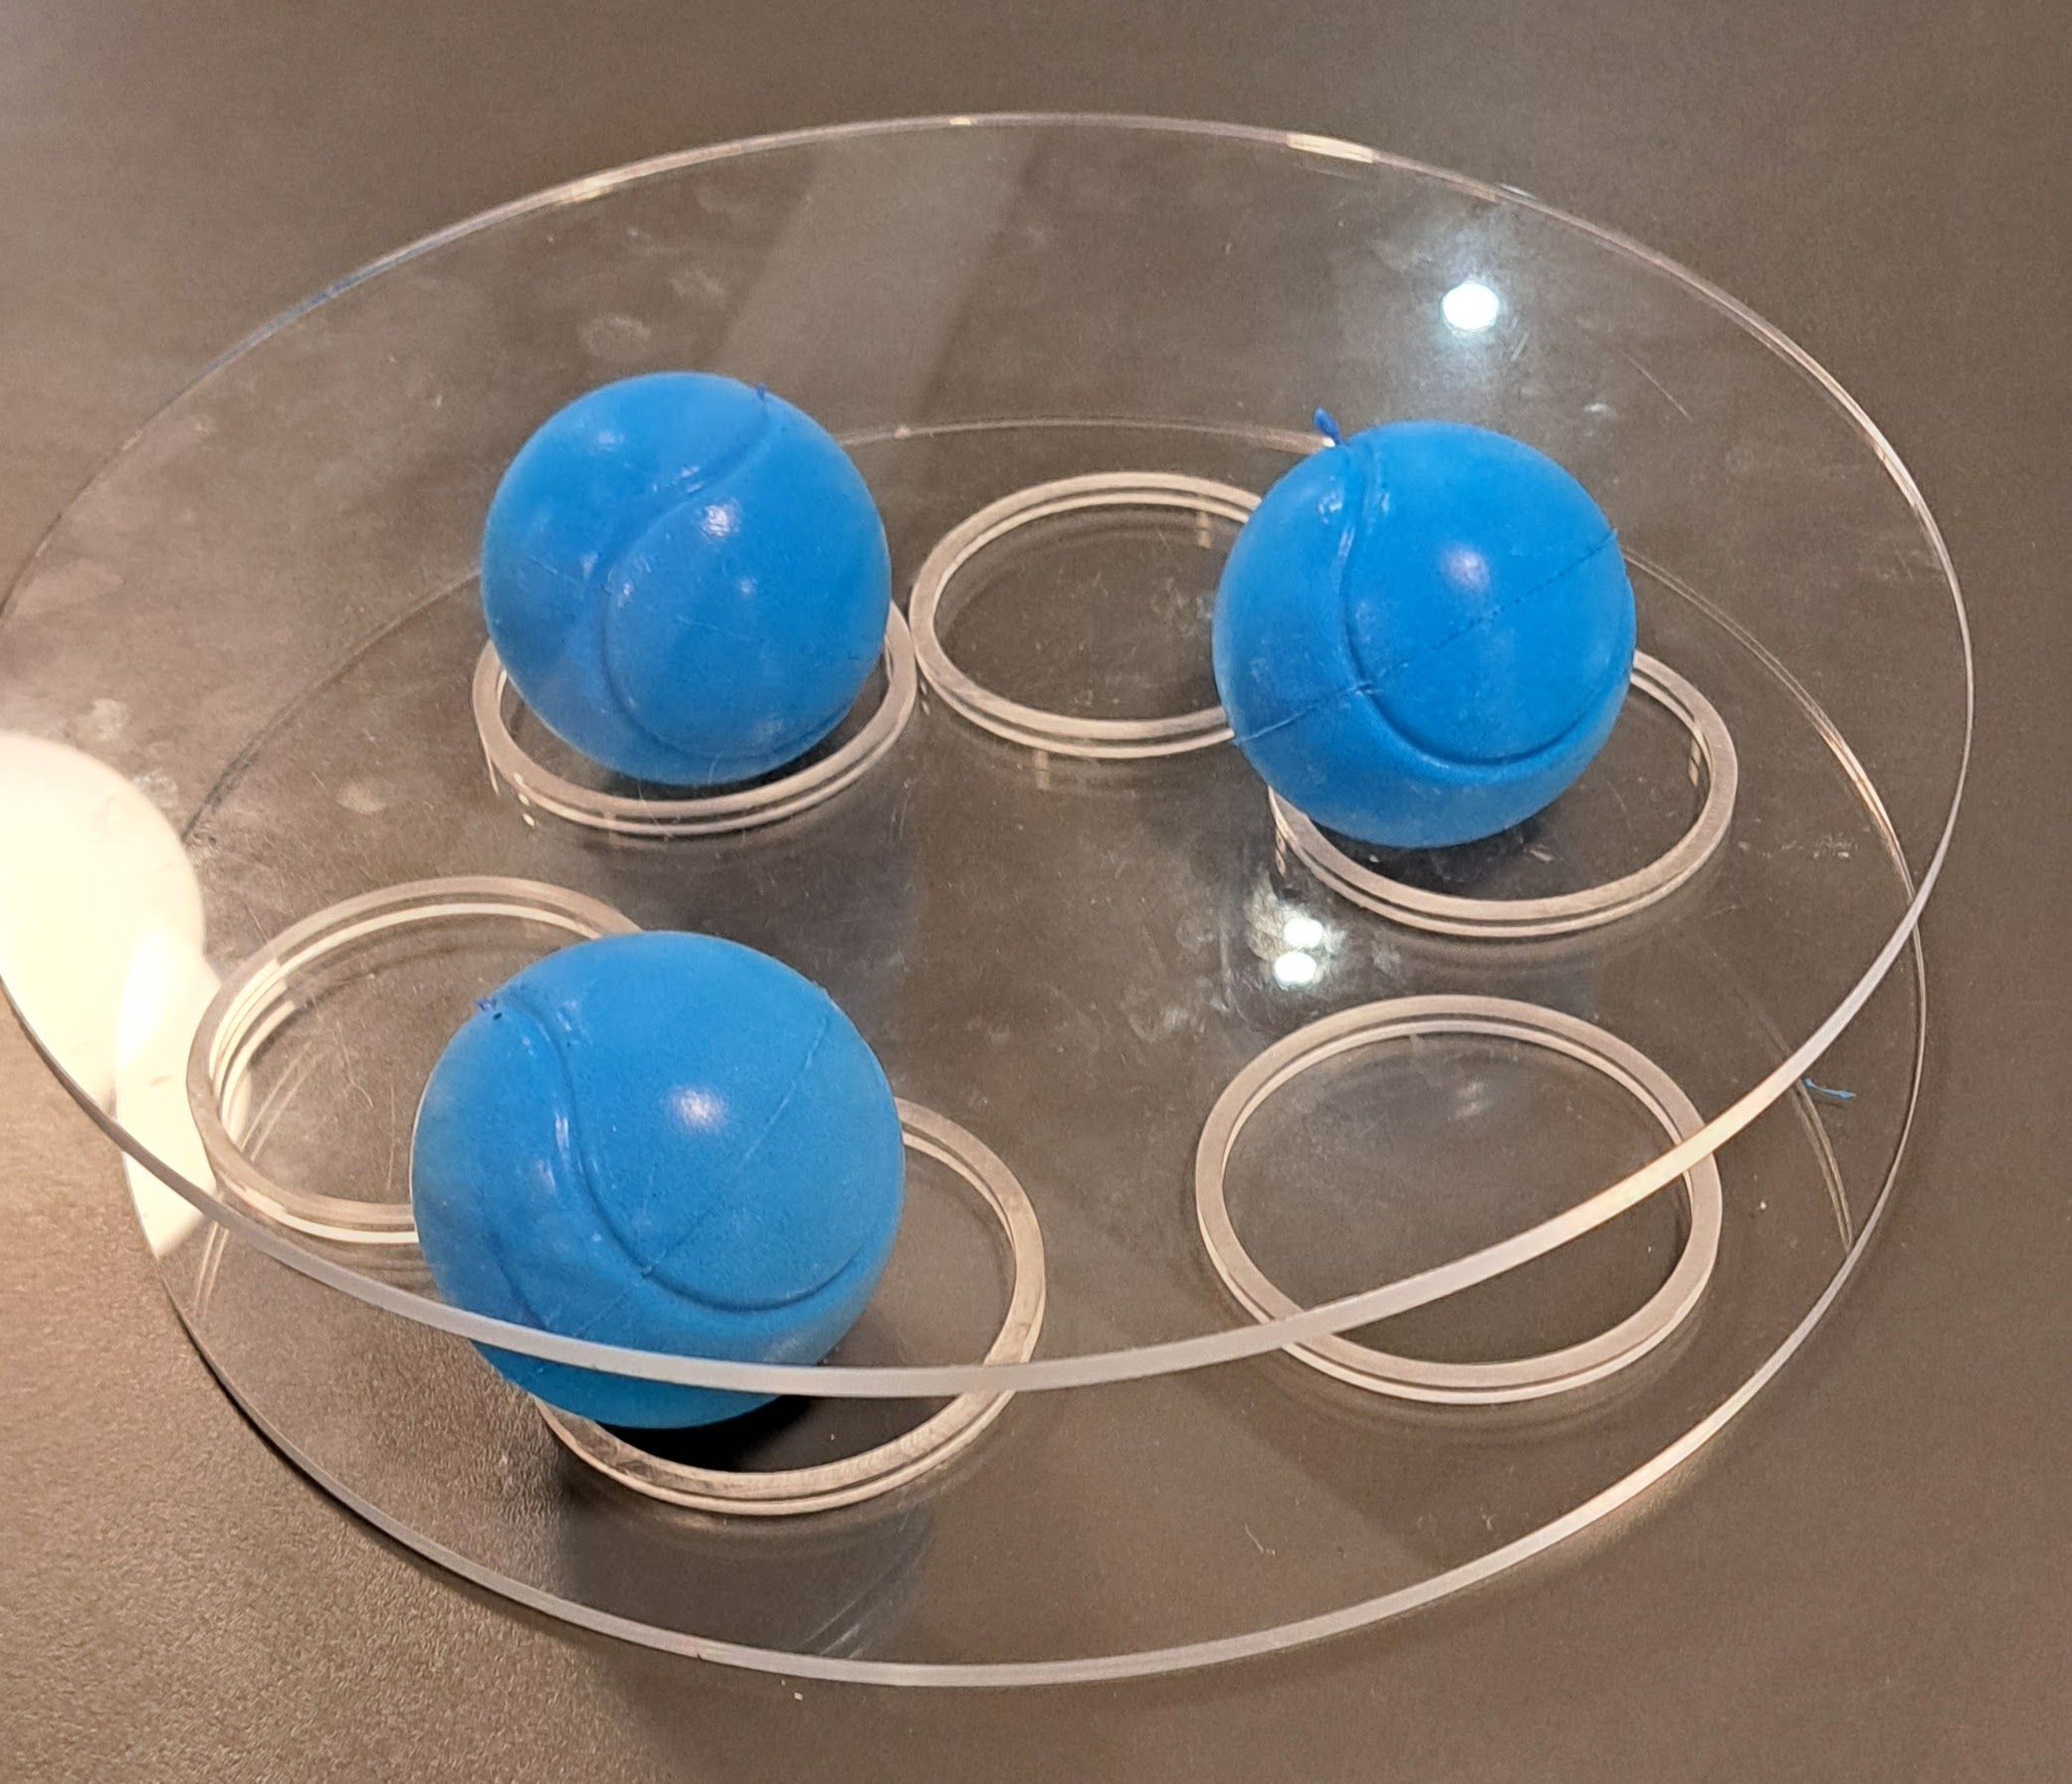 Three foams balls in between two Perspex discs.